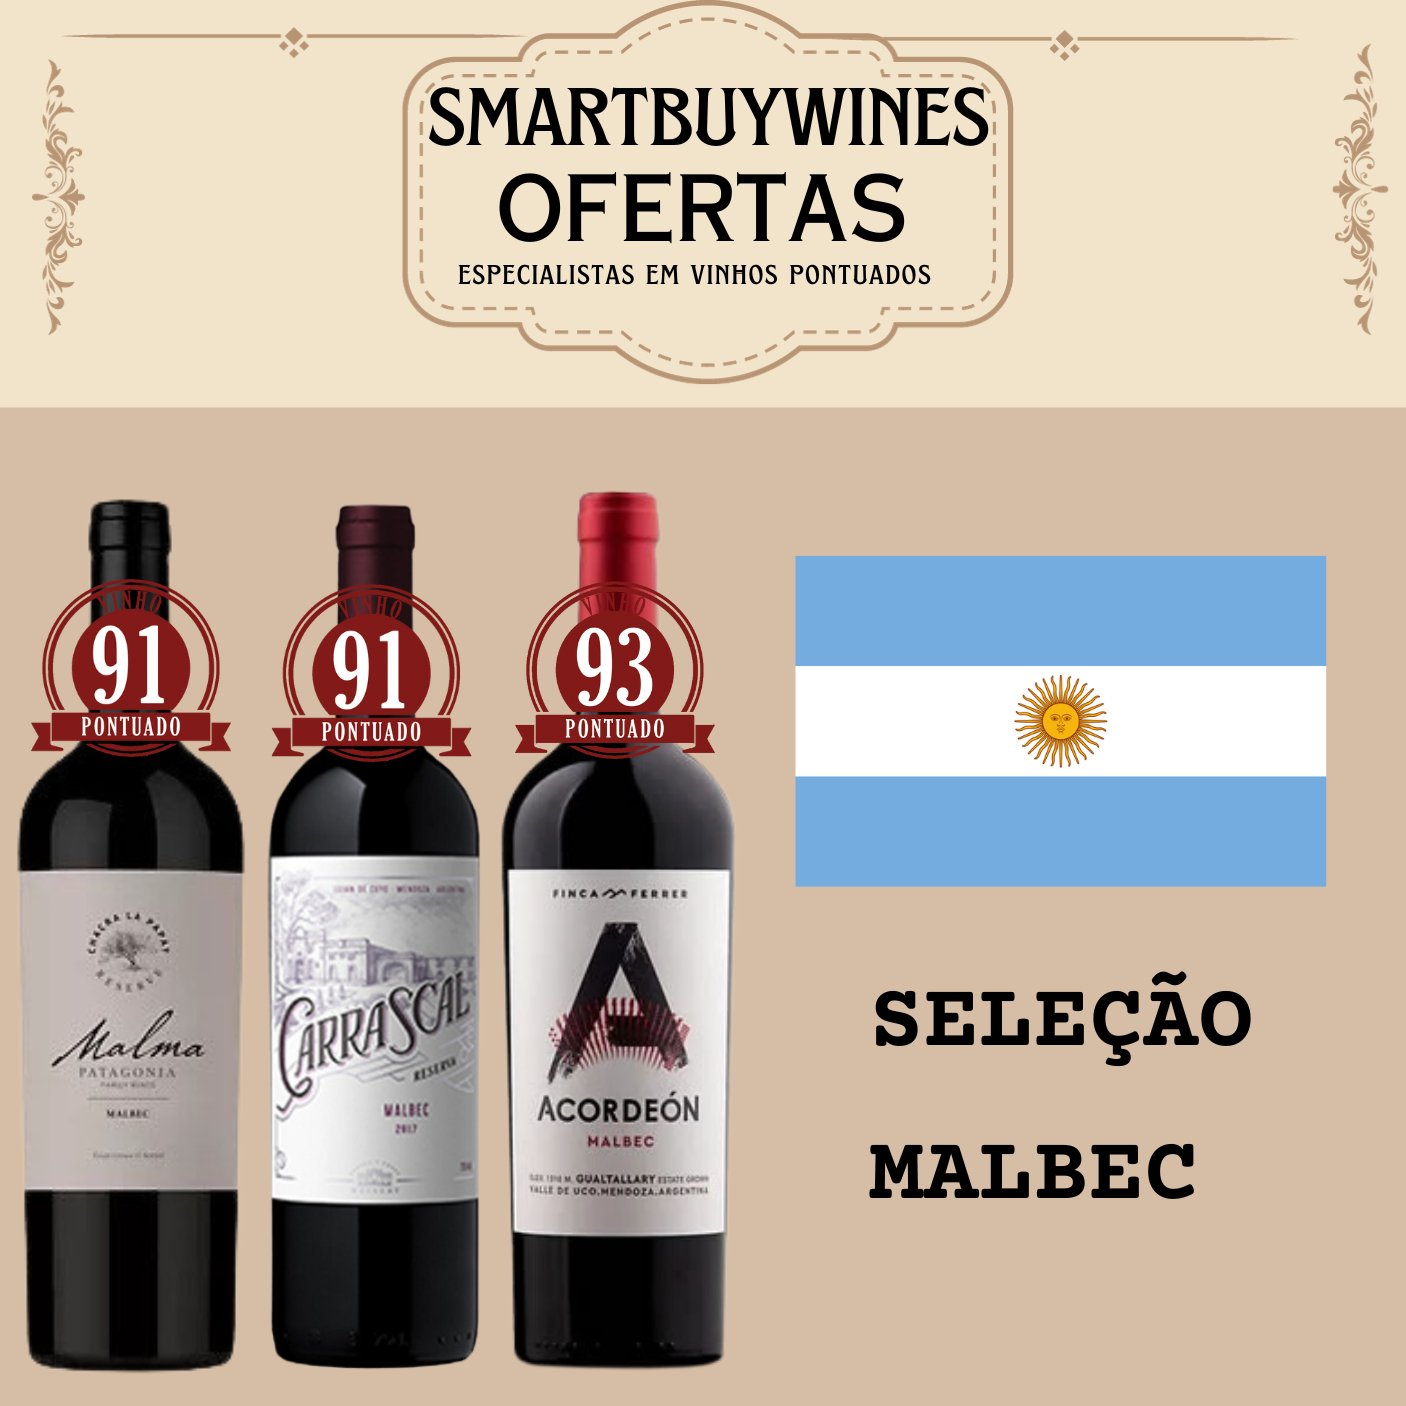 Seleção em oferta - Malbec - caixa de 3 vinhos - SmartBuyWines.com.br